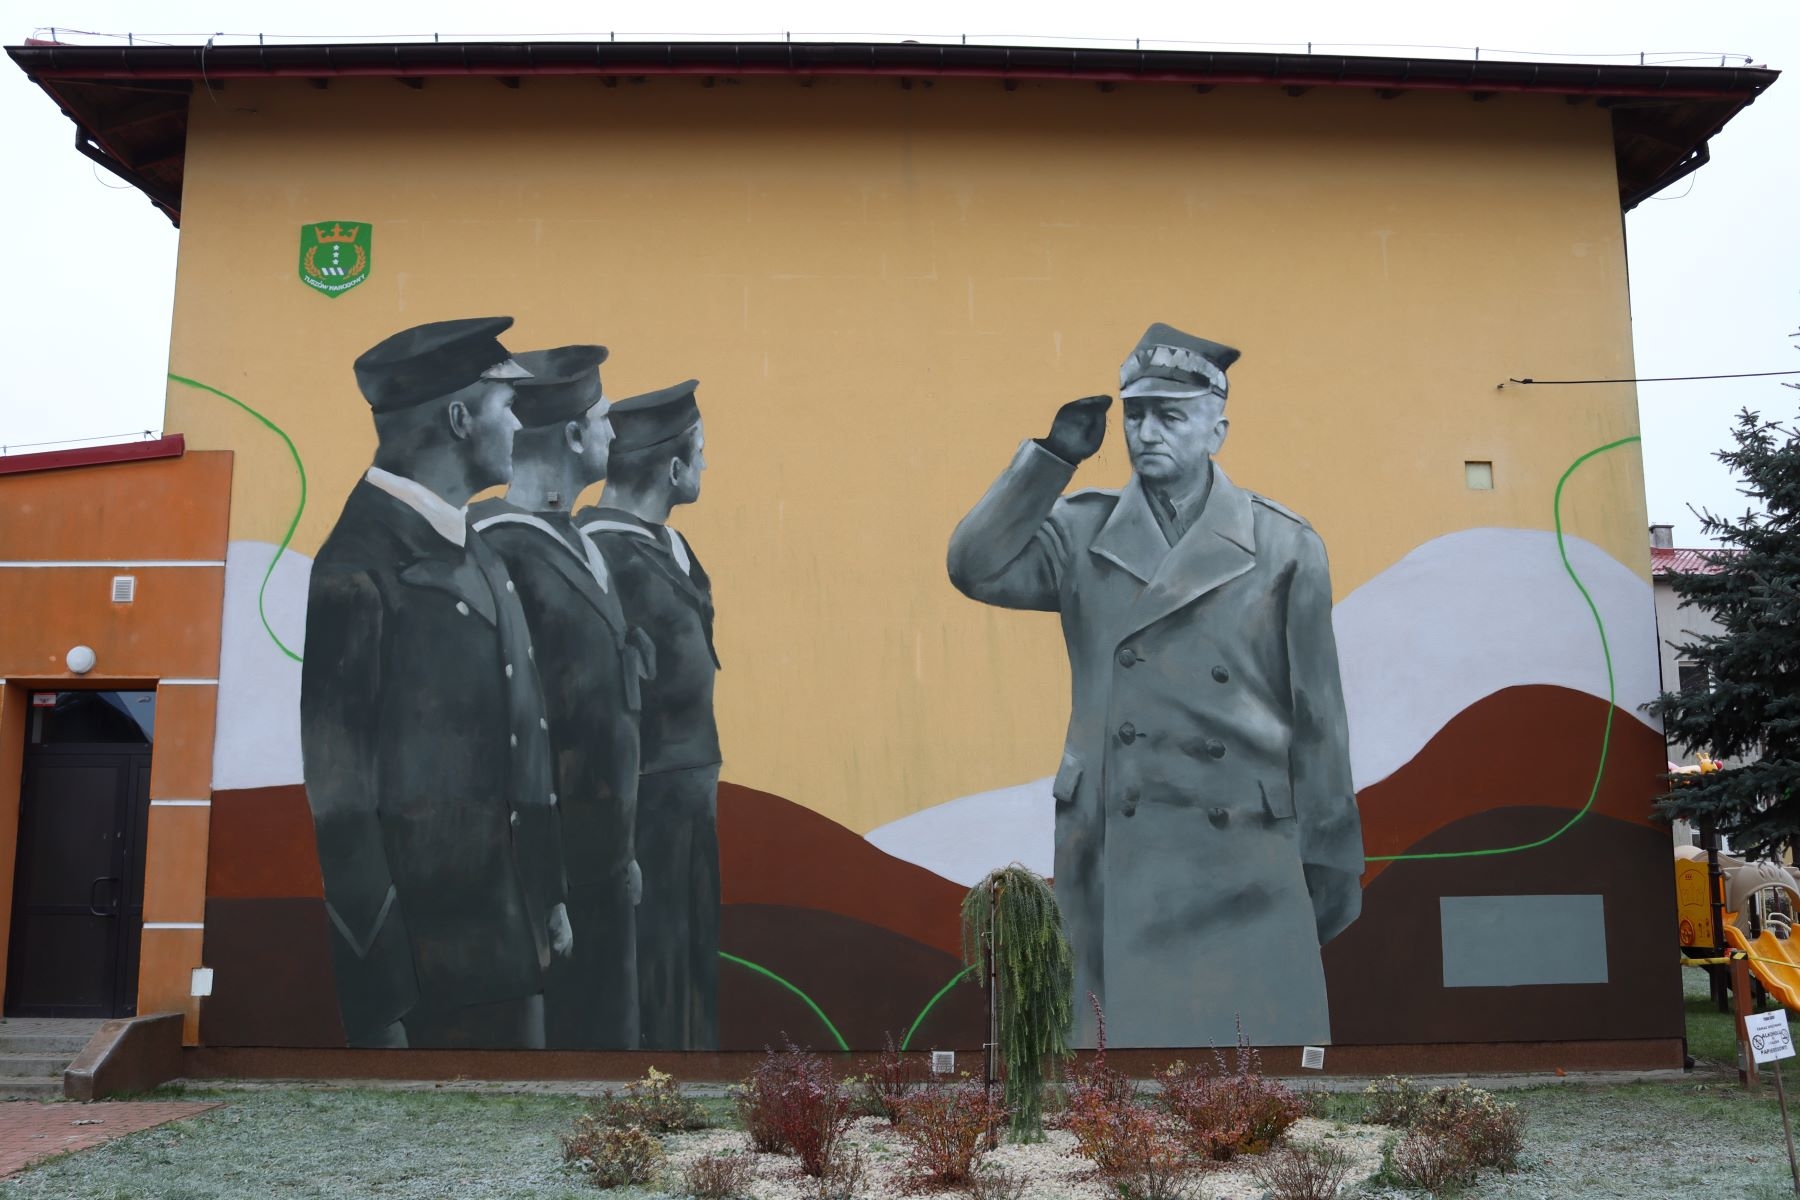 Znany artysta wykonał mural upamiętniający gen. Sikorskiego w Tuszowie Narodowym [FOTO] - Zdjęcie główne